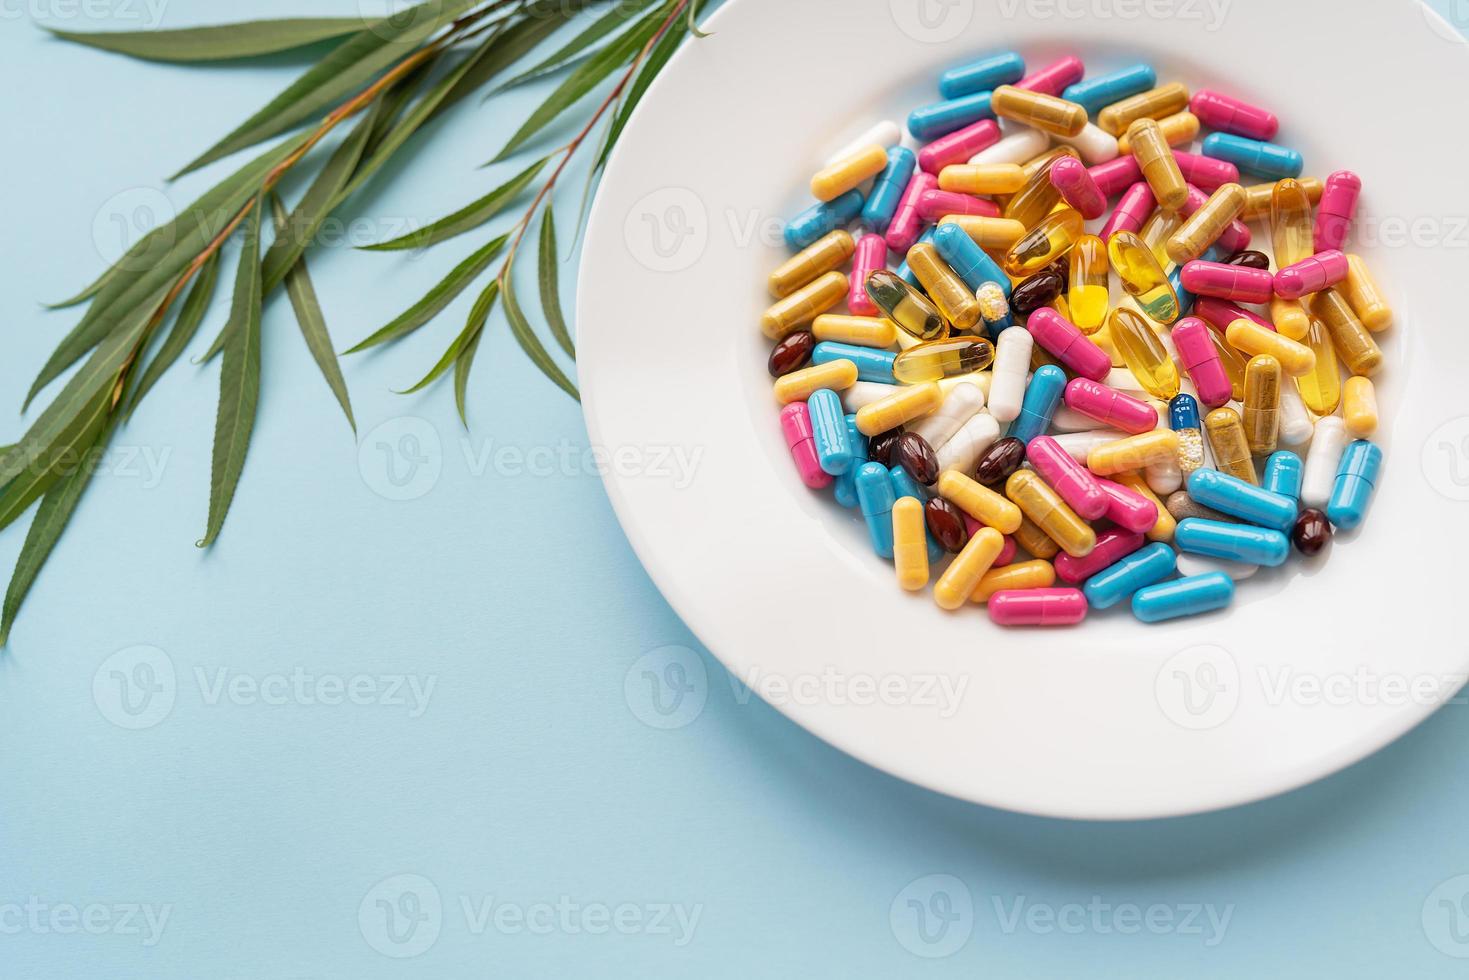 plato blanco con pastillas de suplementos nutricionales en diferentes colores brillantes. fondo azul, lugar para una inscripción. rama verde en el fondo. foto